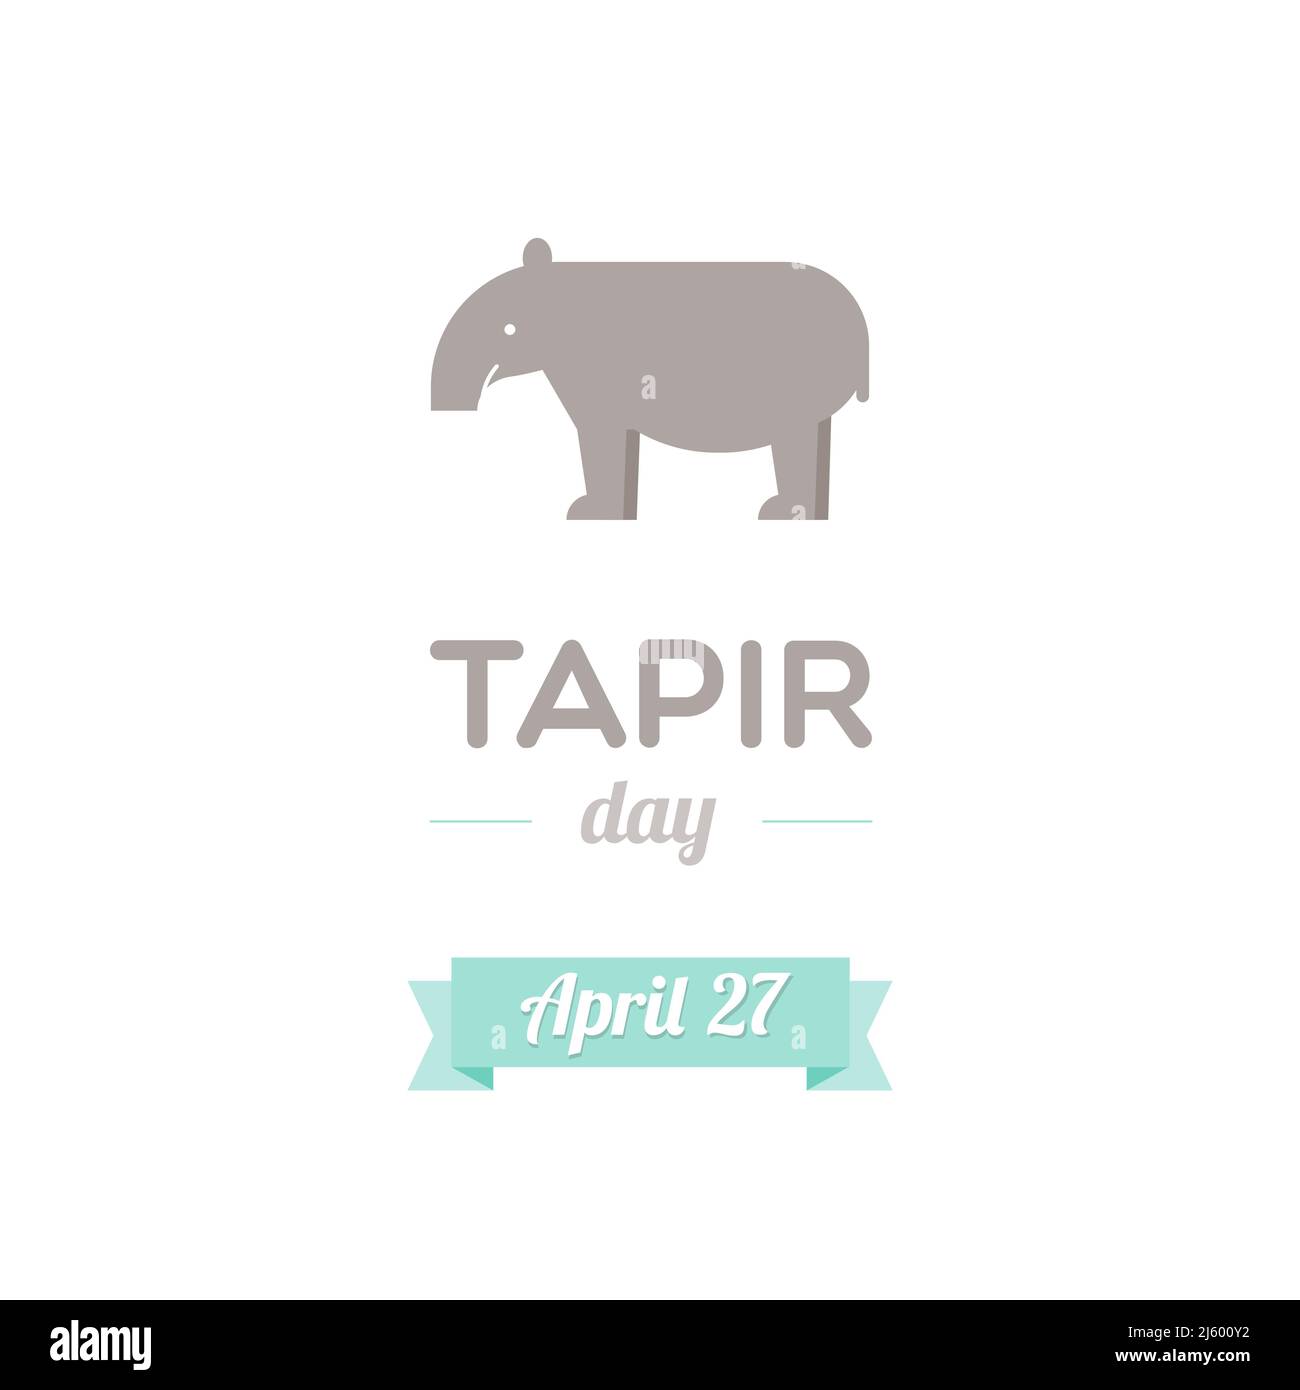 Tapir Day. April. Bewusstsein für den Umweltschutz. Tiersymbol. Vektorgrafik, flaches Design Stock Vektor